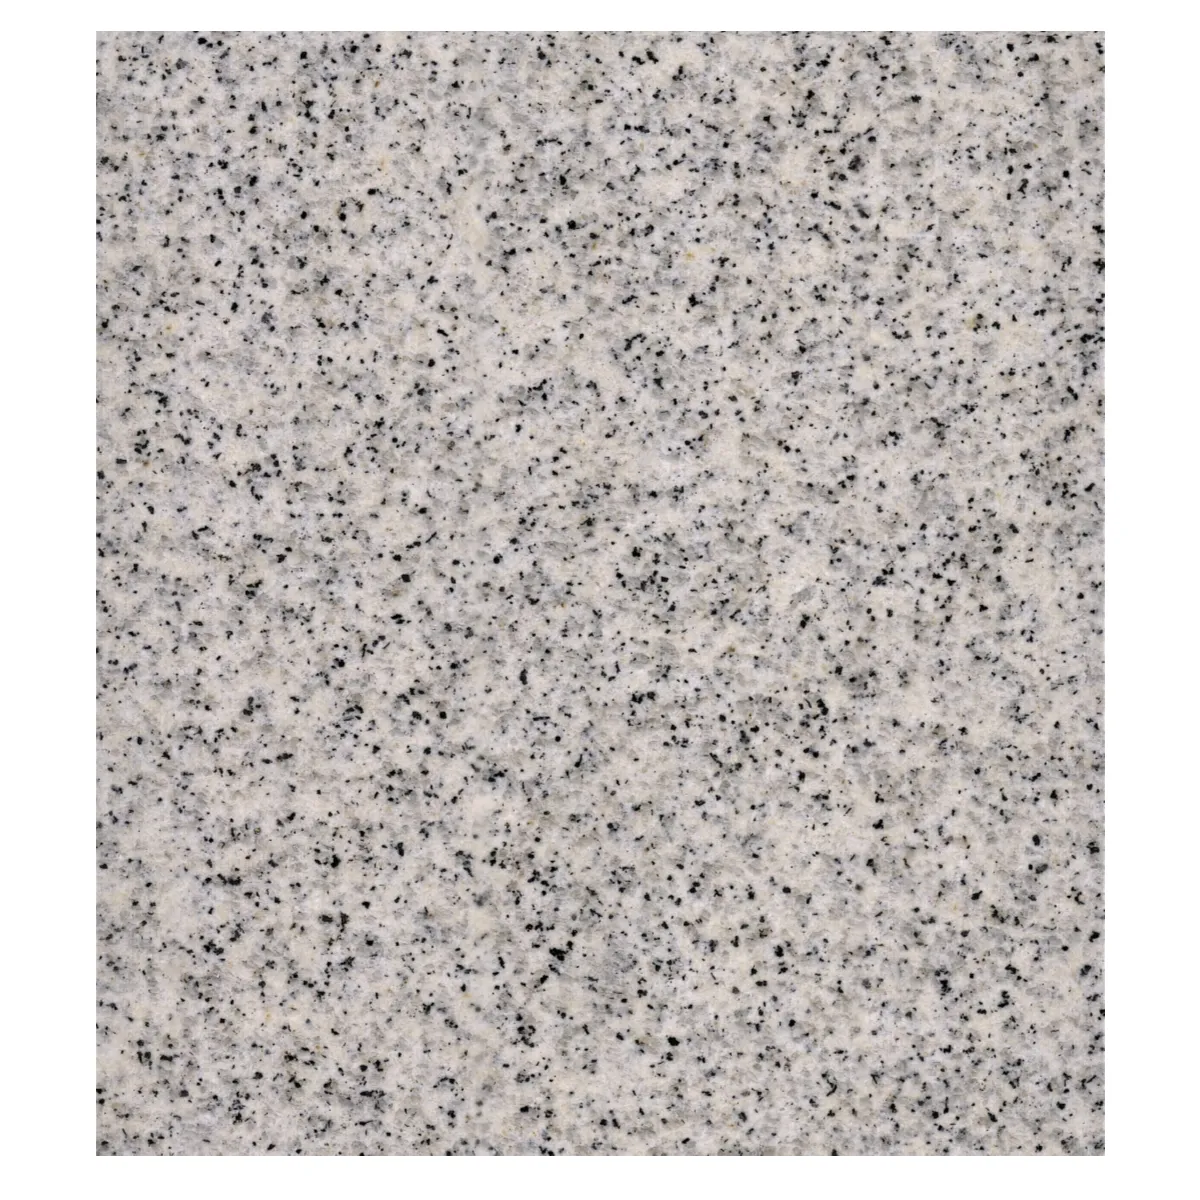 Shandong Natural Light Gray Granite Pavers Modern White Hemp Gray Granite Tile for Exterior for Villas Hotels Parks